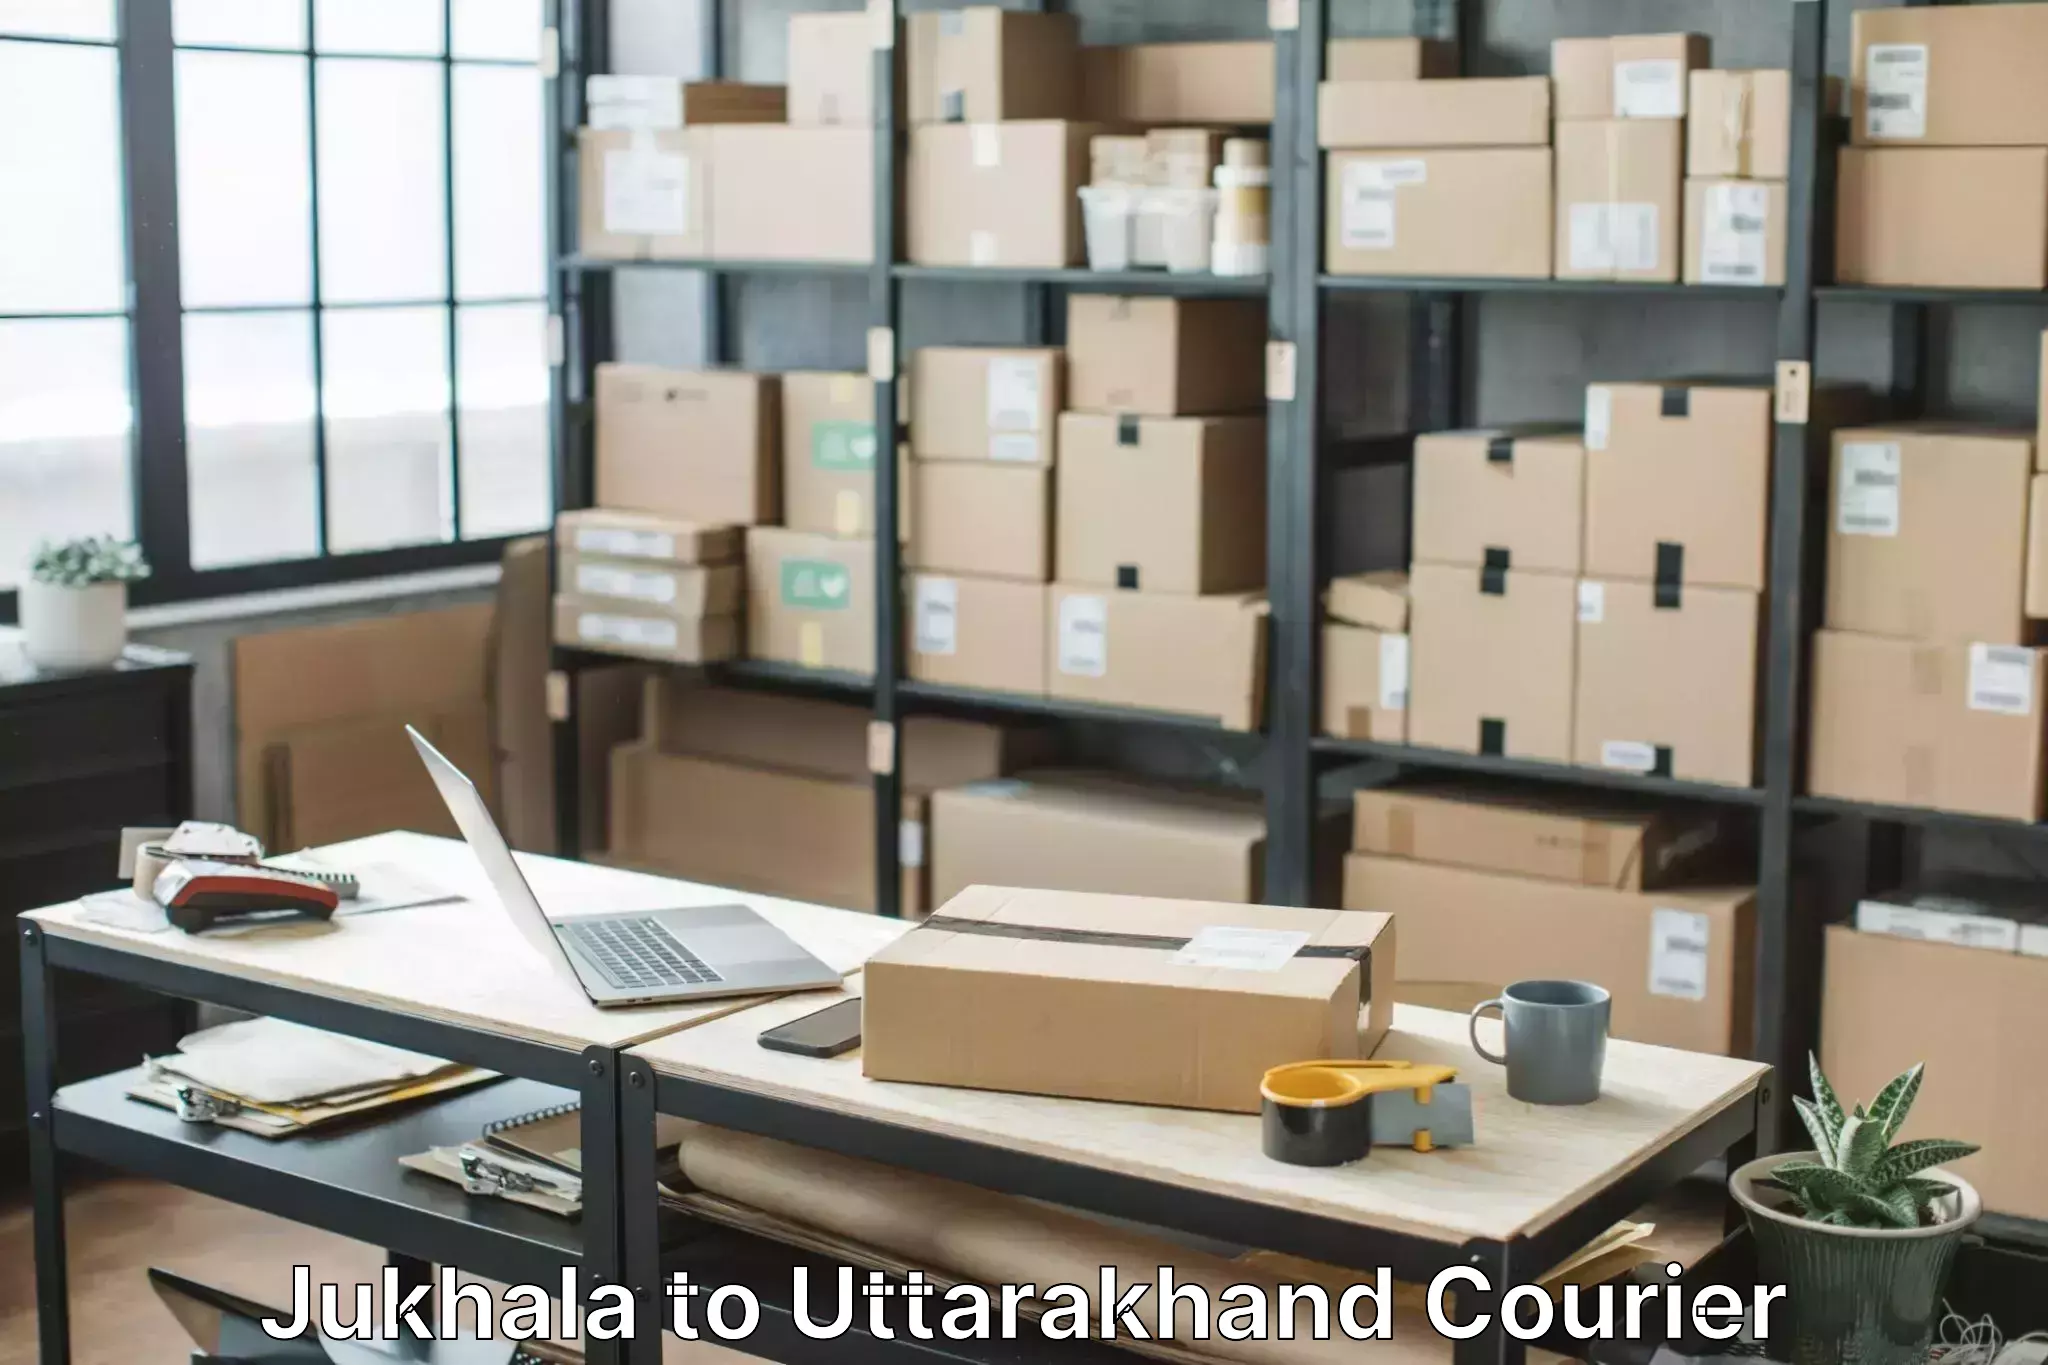 Dependable moving services Jukhala to Uttarakhand